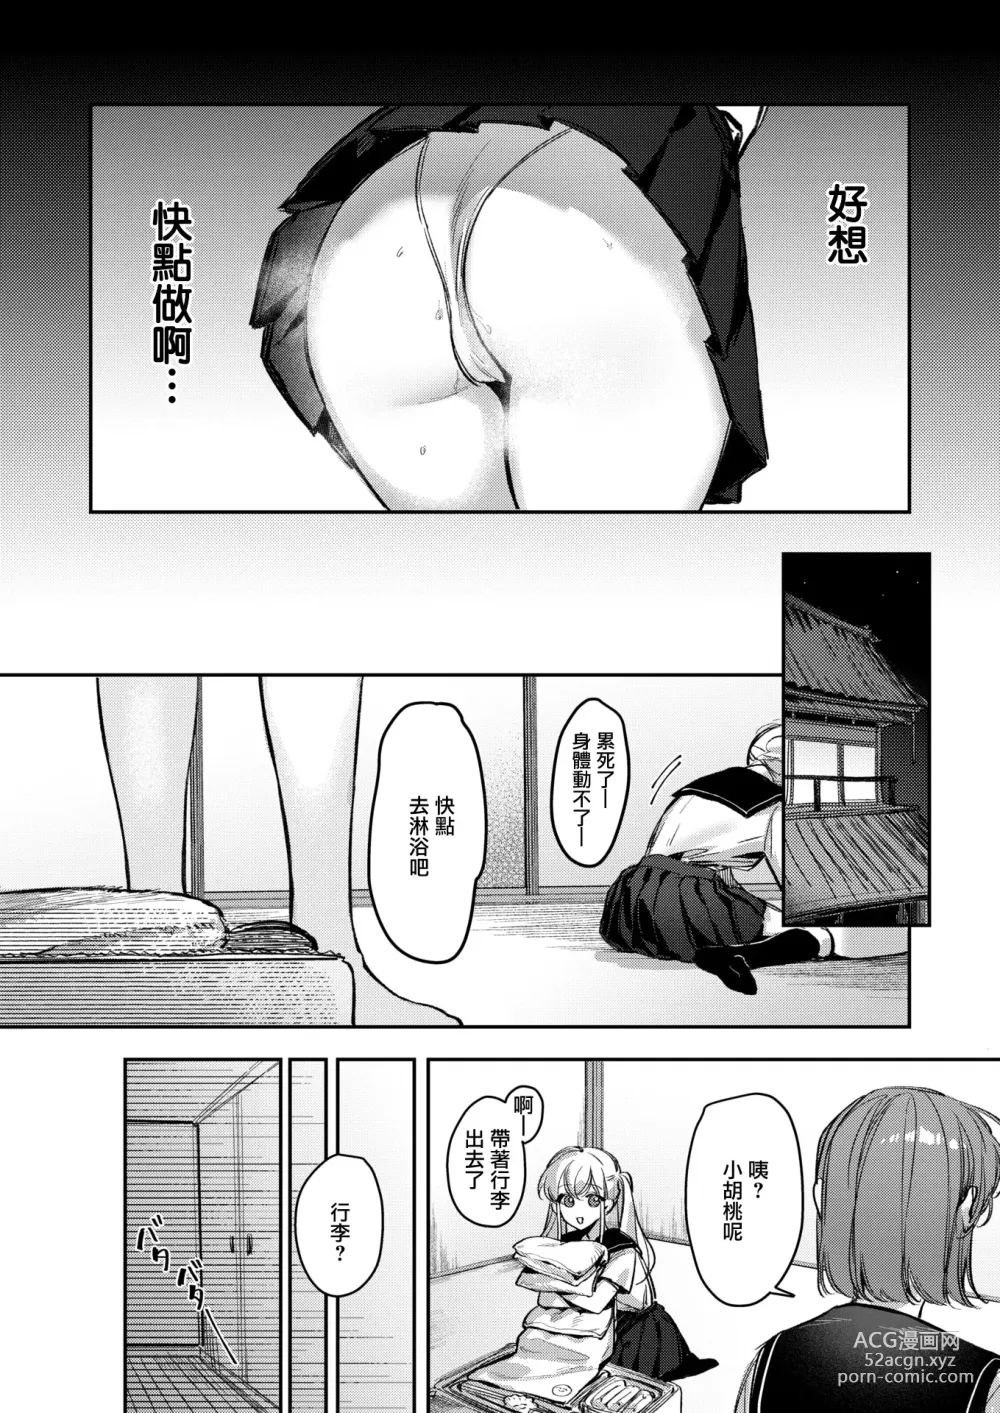 Page 5 of manga Doutei Reaper Sotsugyou Ryokou